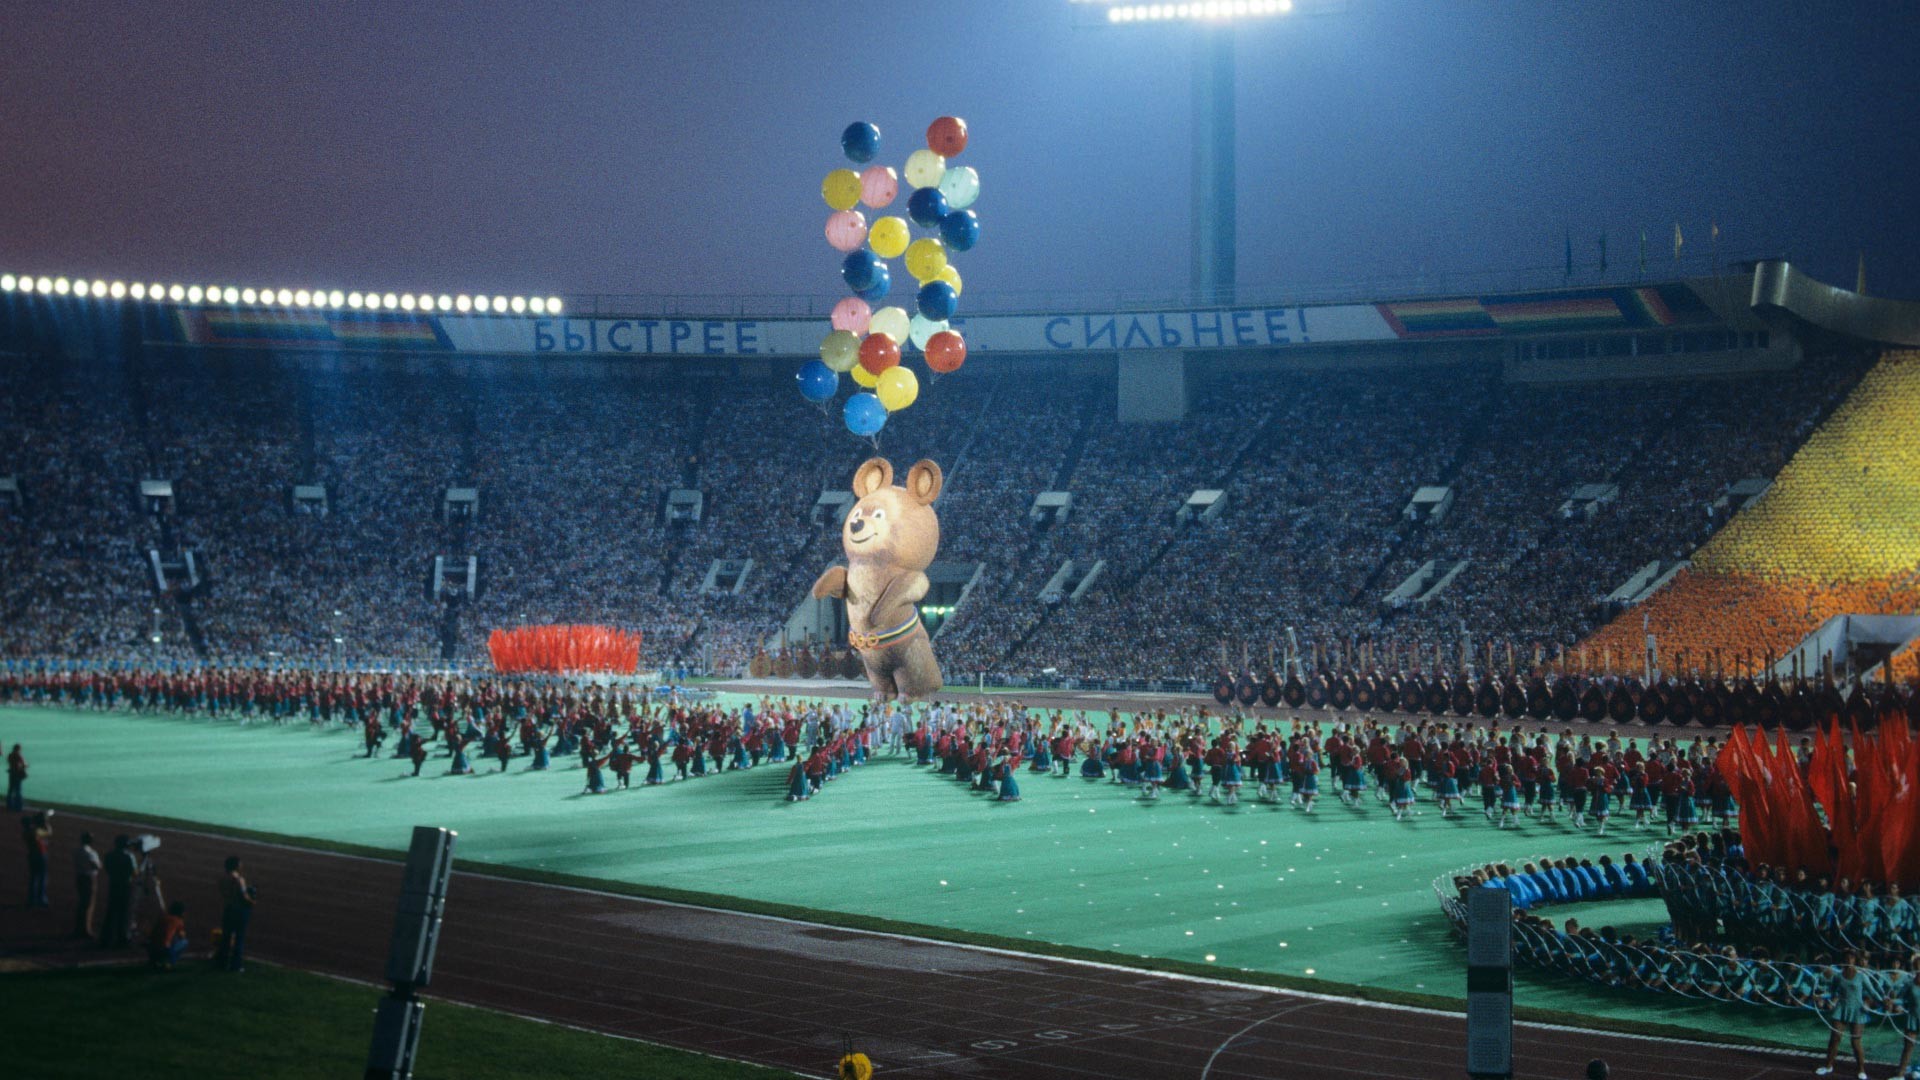 Velika športna arena Centralnega stadiona Lenina. Slovesnost ob zaprtju 22. olimpijskih iger, na kateri so v nebo spustili 8-metrsko podobo maskote Miške